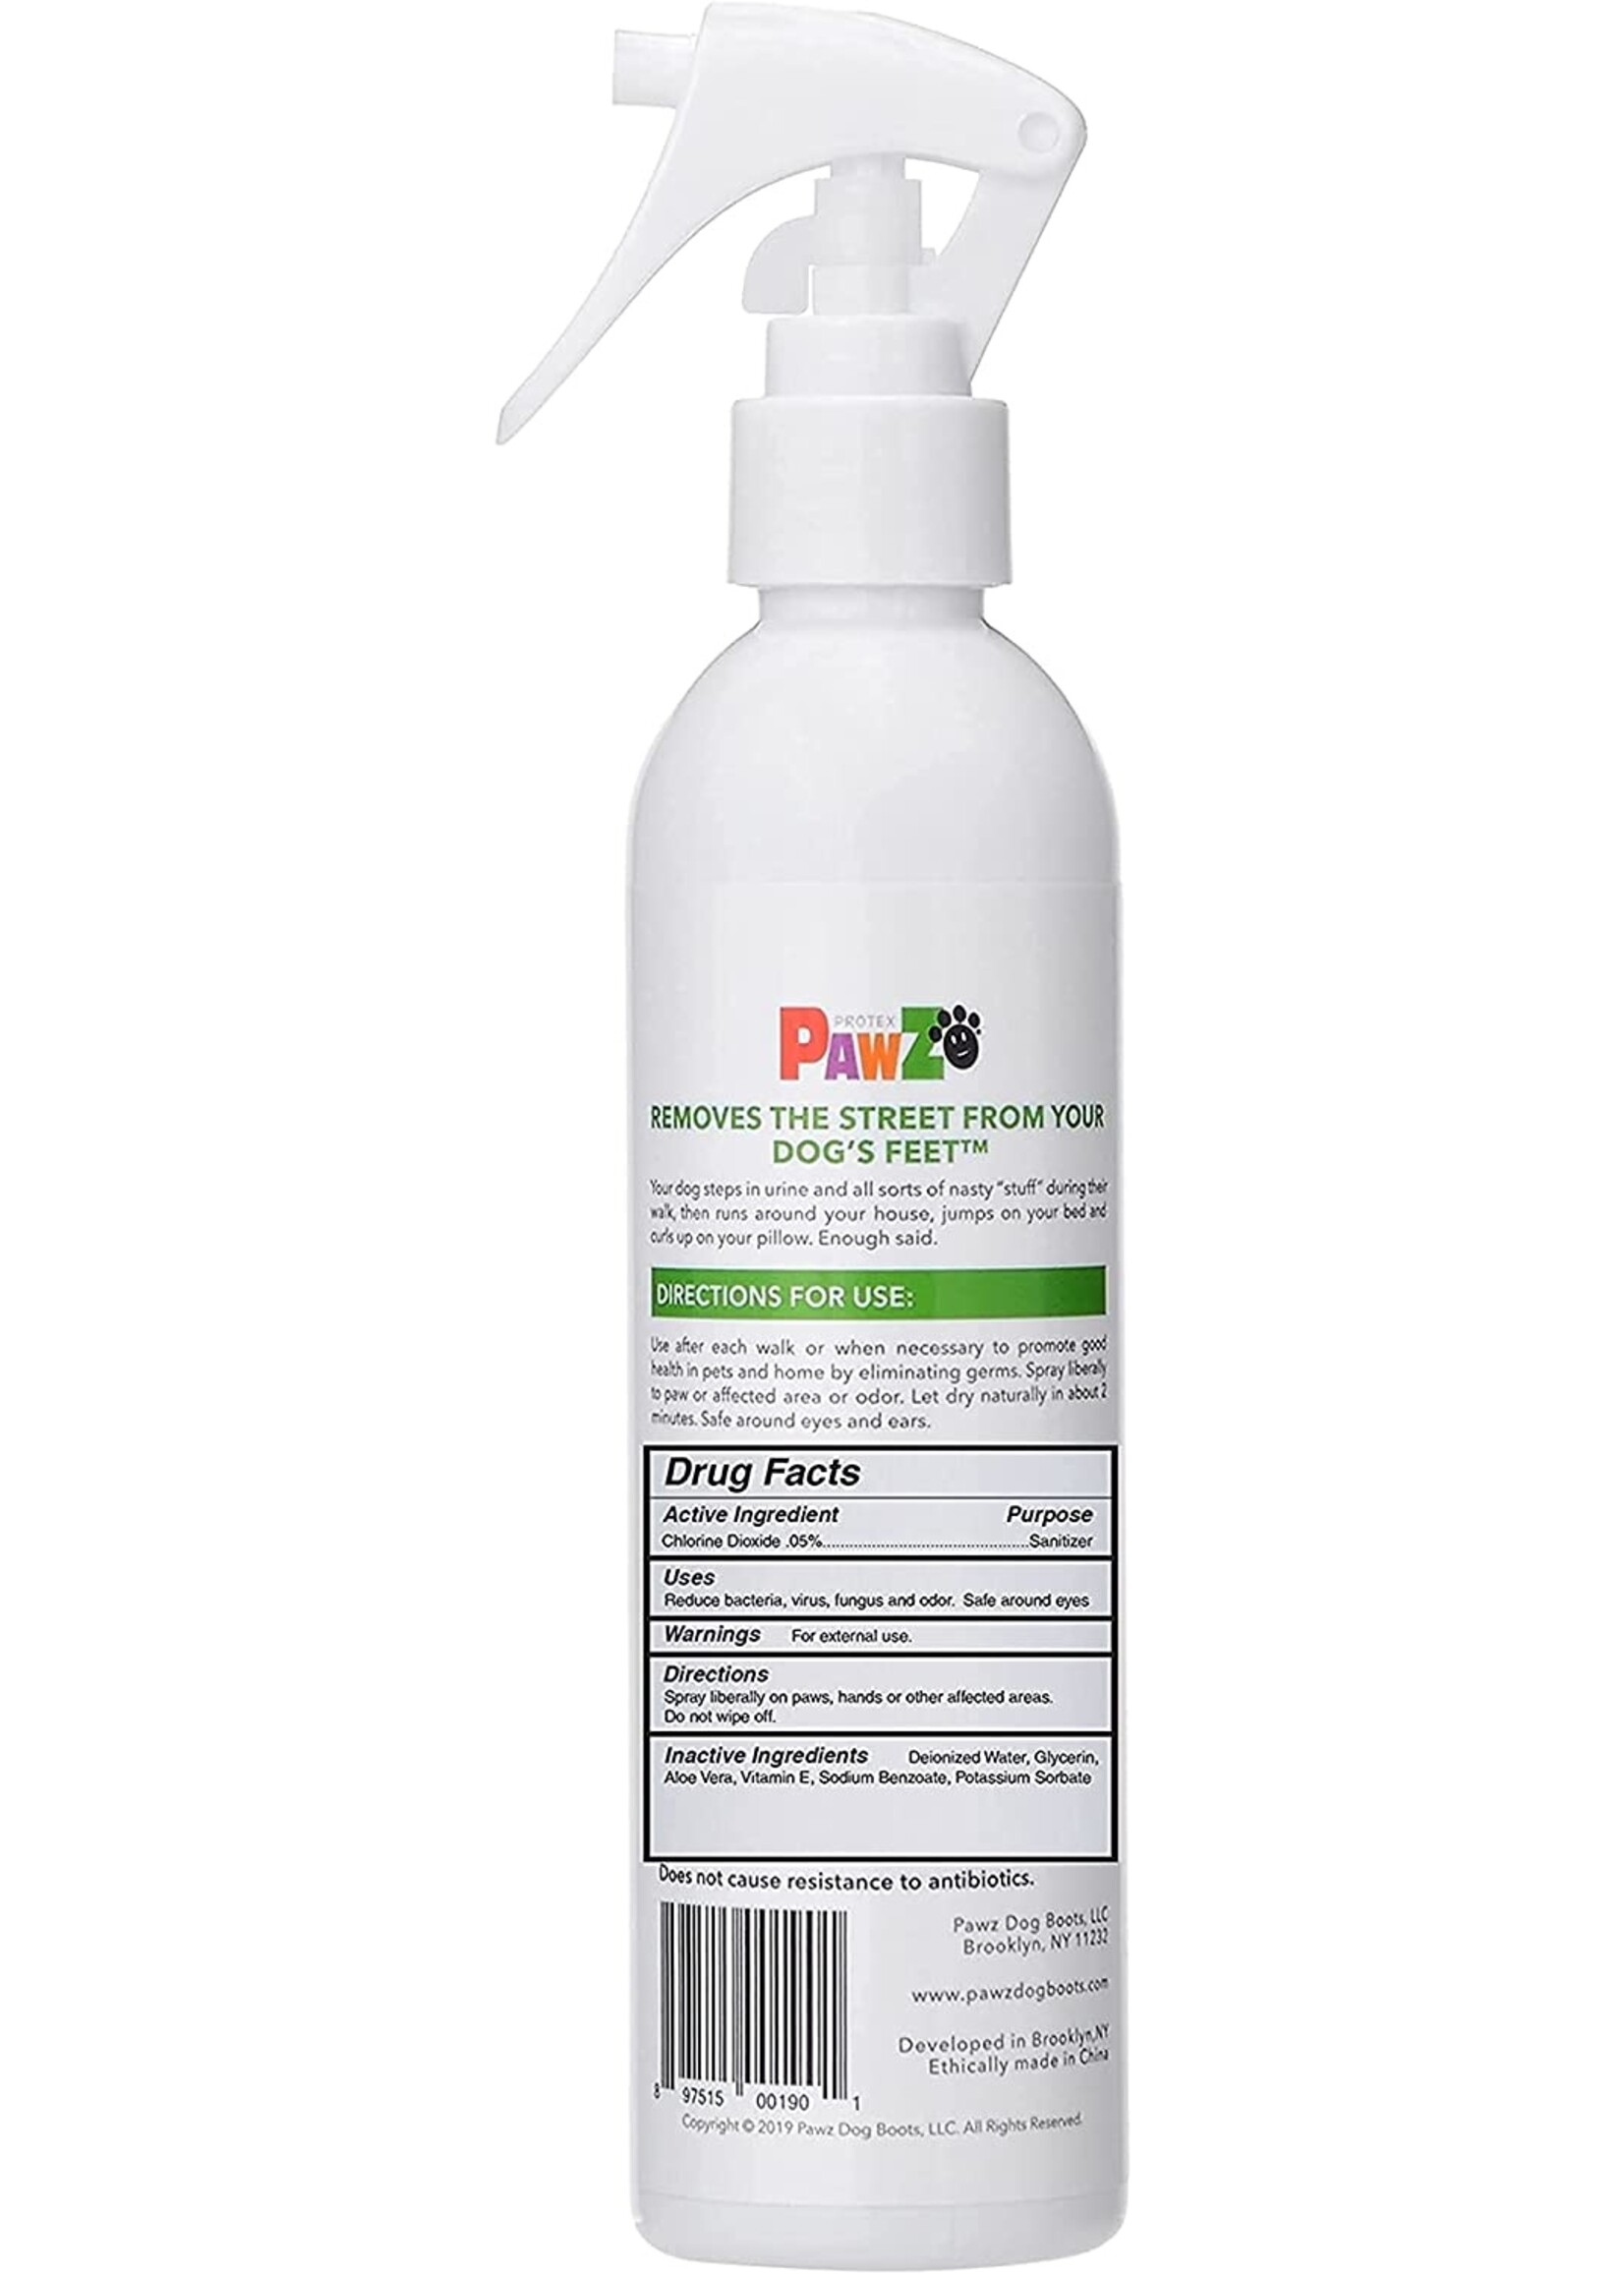 Pawz Pawz Paw Sanitizing Spray 8oz